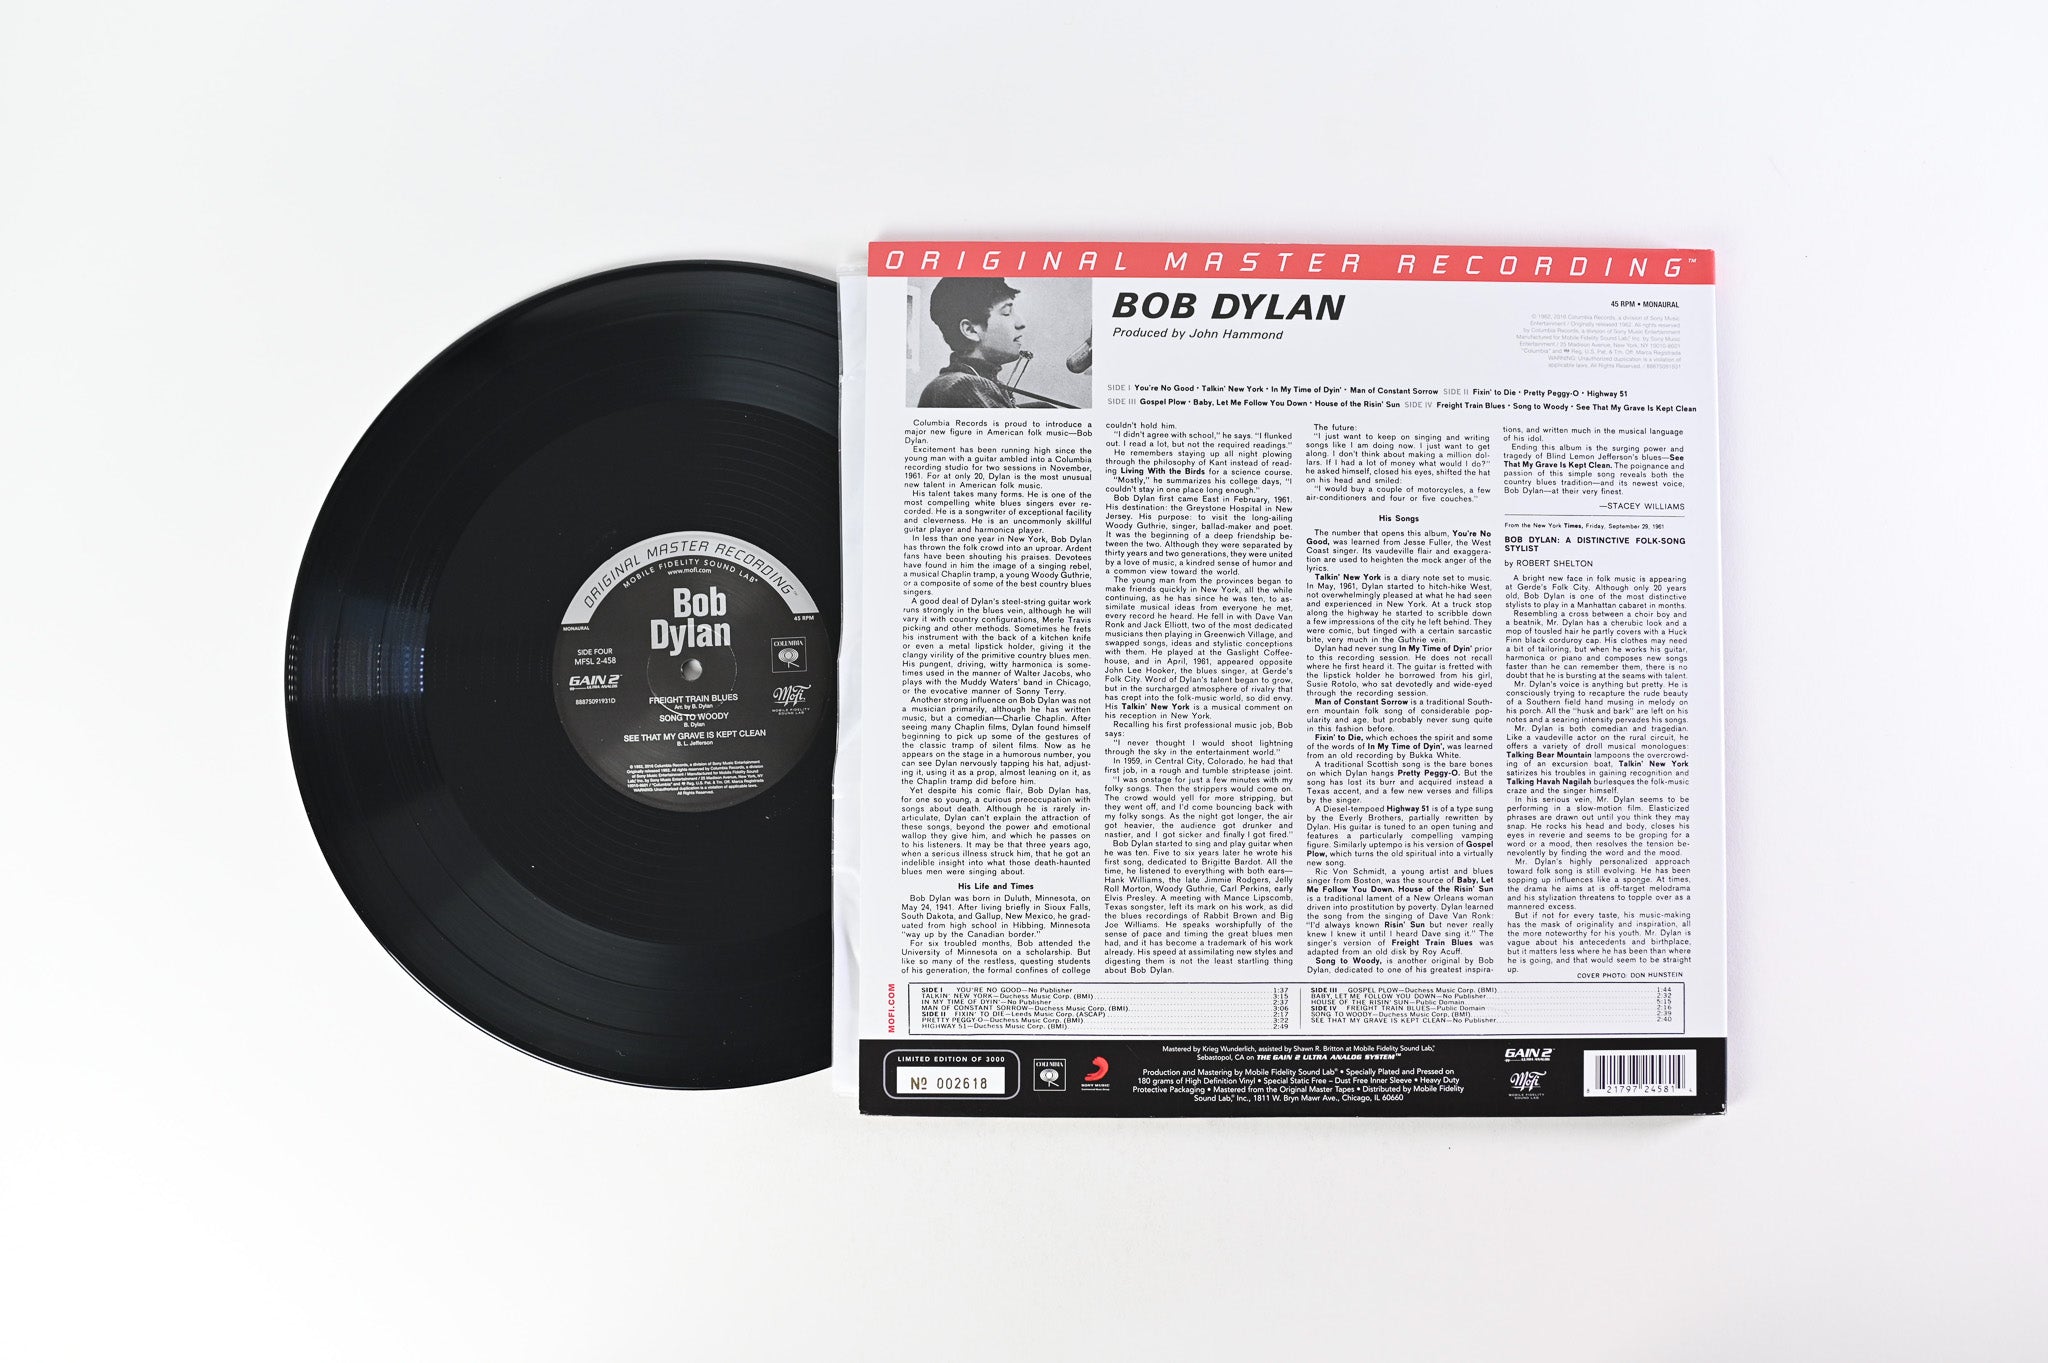 Bob Dylan - Bob Dylan Mobile Fidelity Sound Lab Mono Reissue